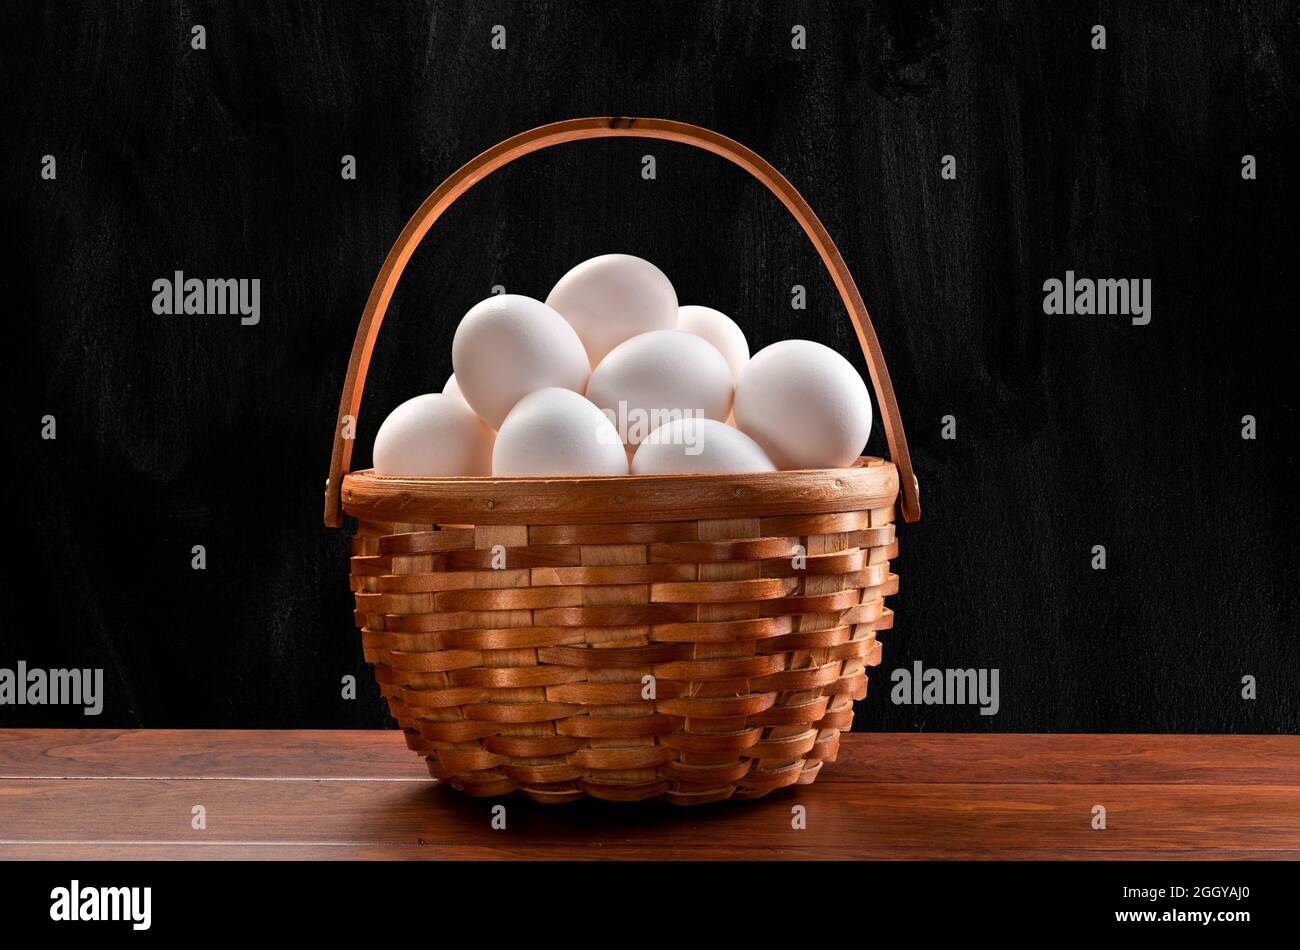 Un cestino di vimini di uova bianche appena raccolte sulla parte superiore di un tavolo di legno e incorniciato da un sottile sfondo nero, chiazzato. Foto Stock